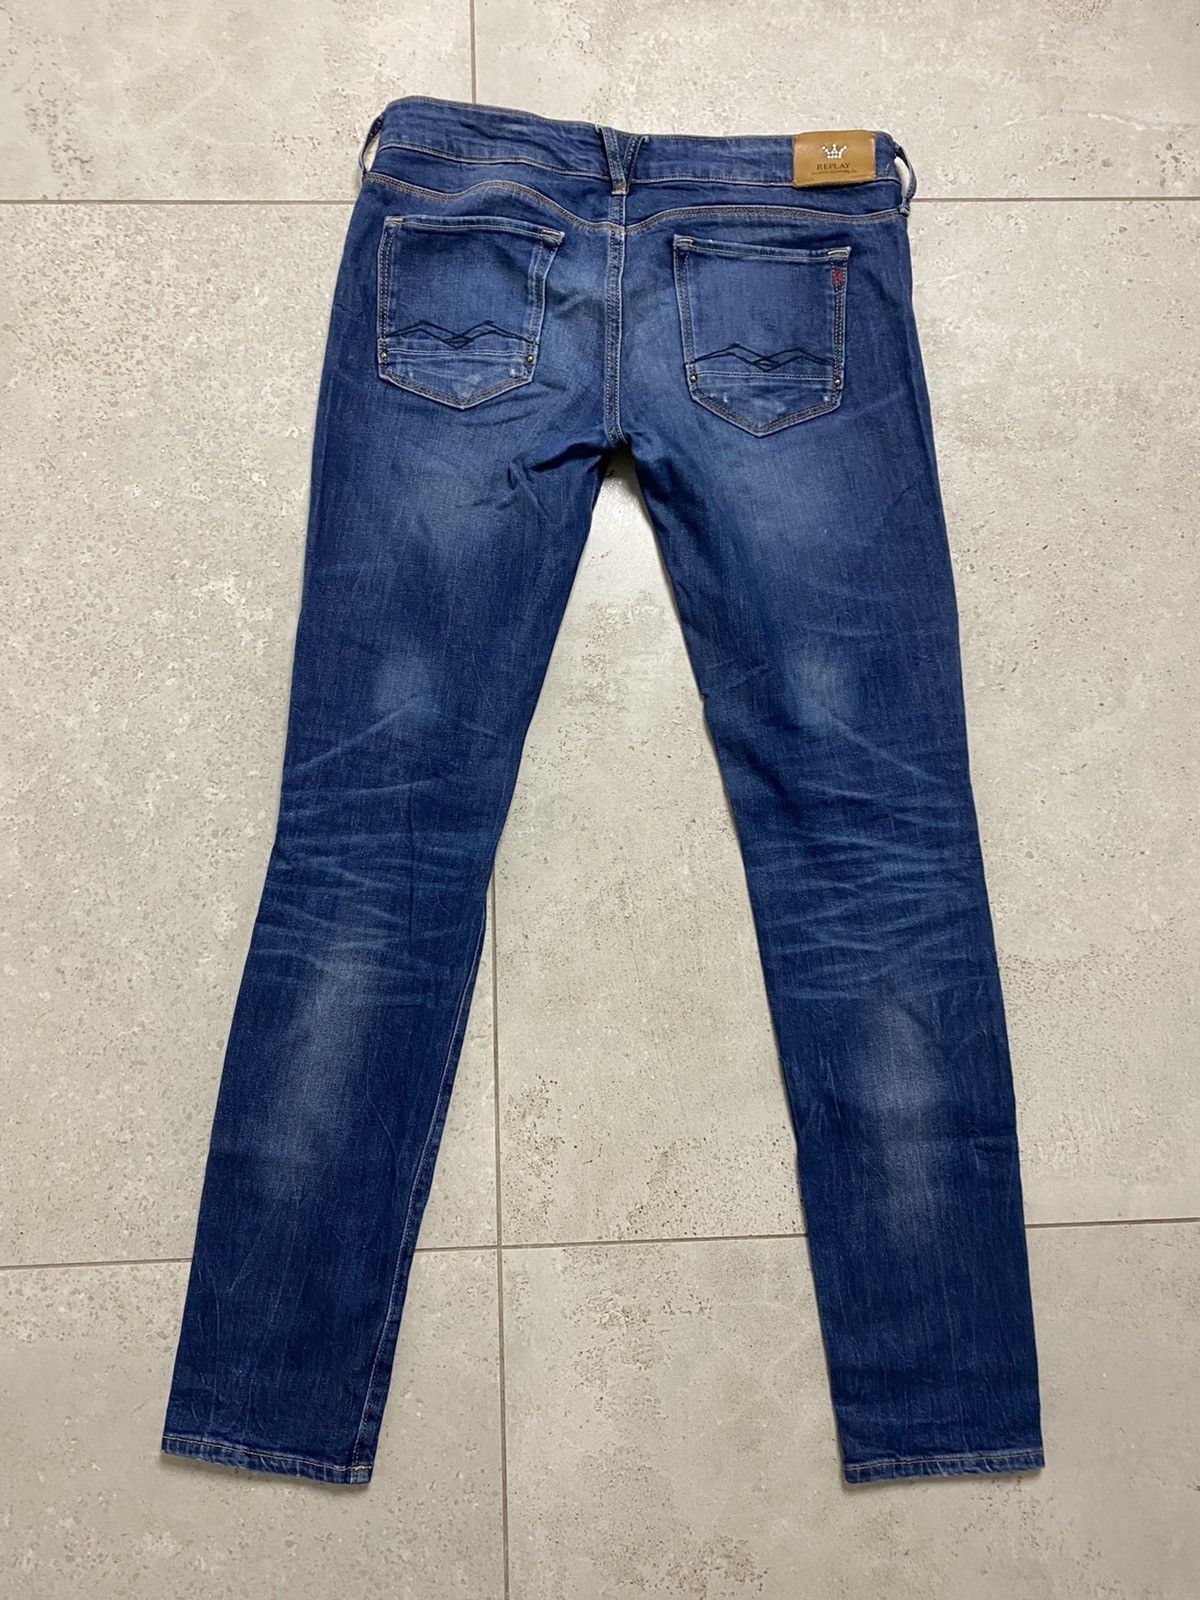 Vintage Replay vintage blue jeans denim pants | Grailed